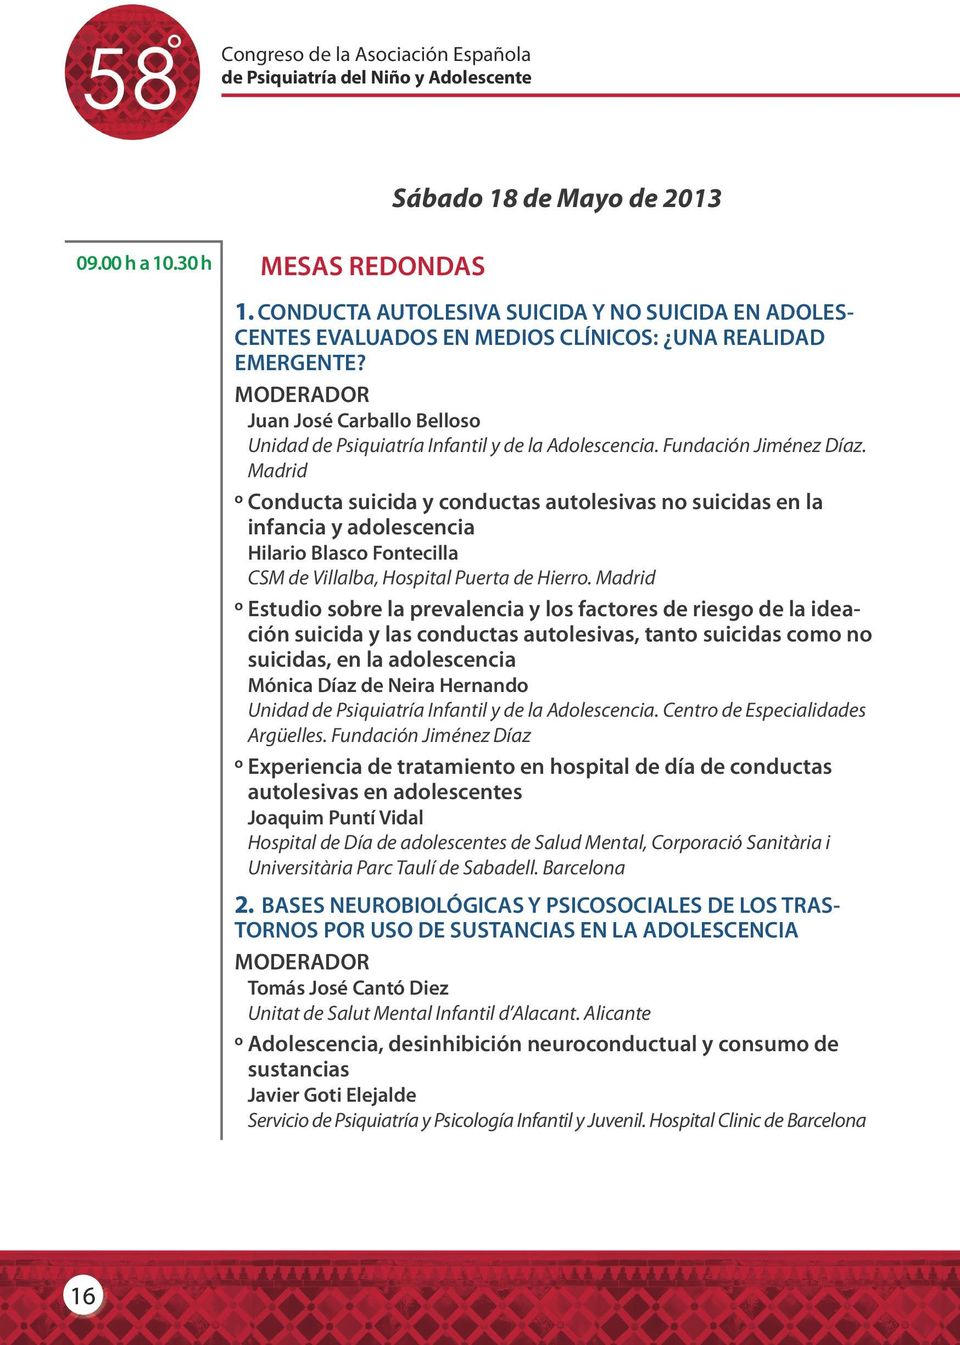 MODERADOR Juan José Carballo Belloso Unidad de Psiquiatría Infantil y de la Adolescencia. Fundación Jiménez Díaz.